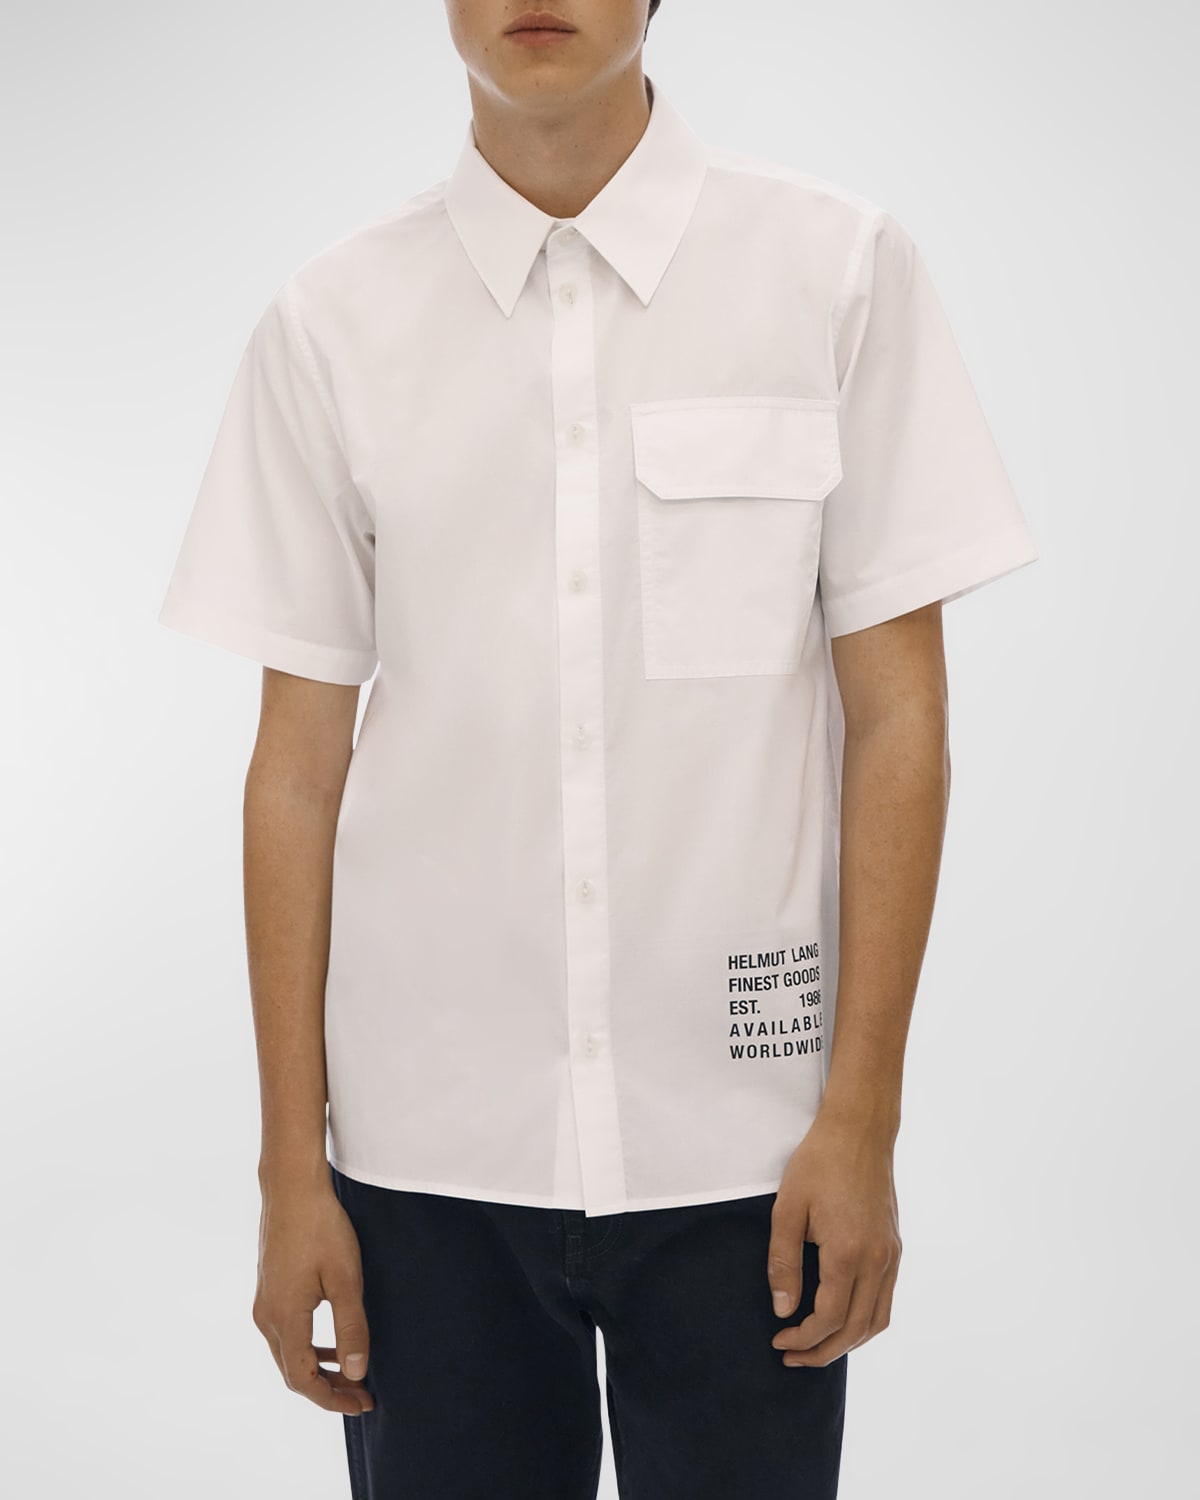 Helmut Lang Men's Point-Collar Logo Sport Shirt